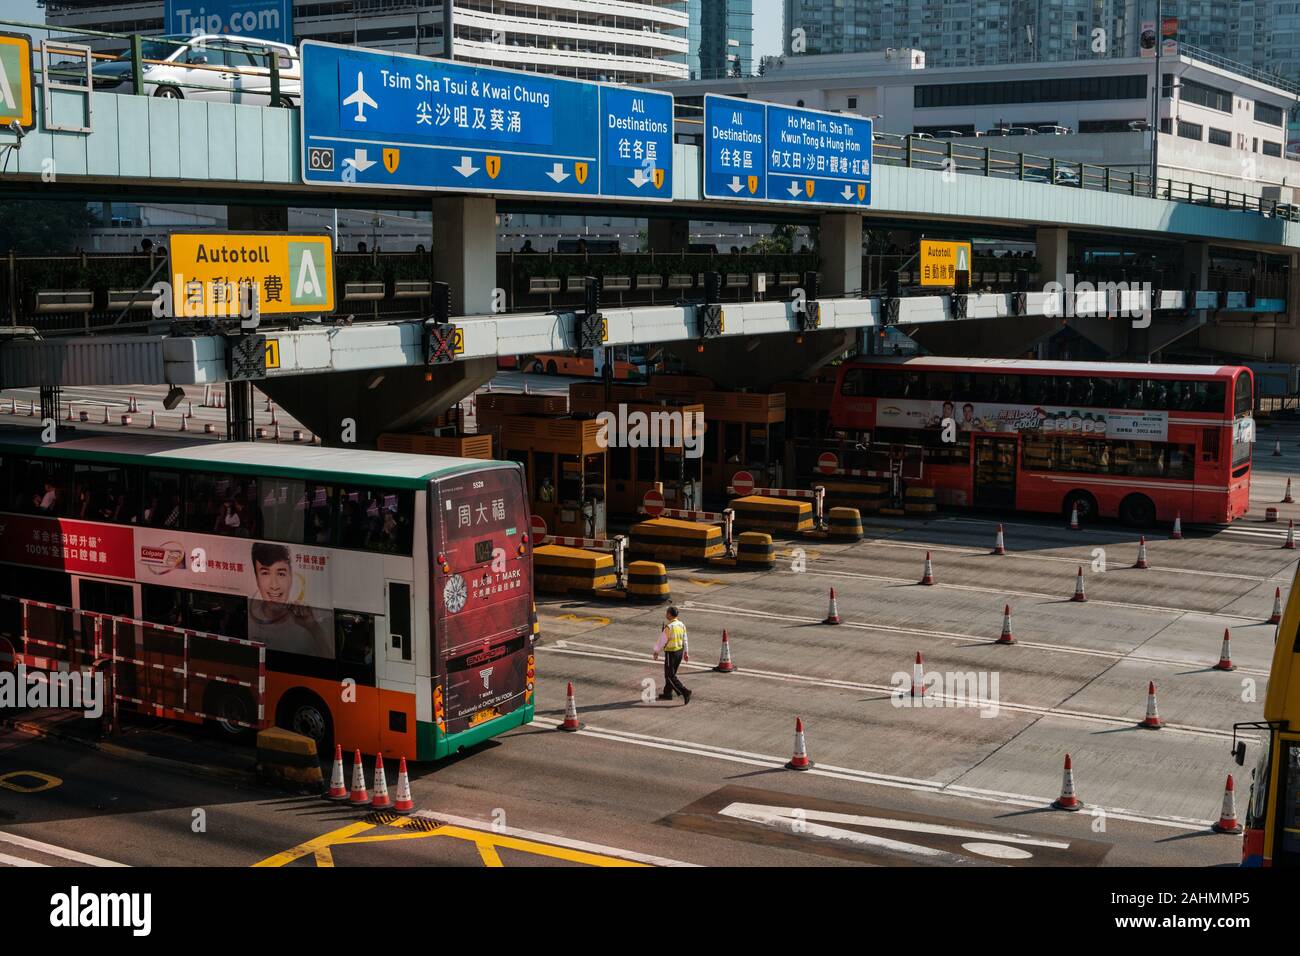 HongKong, china - November, 2019: Bus traffic jam on highway in Hung Hom cross harbor tunnel during 2019 Hong Kong protests Stock Photo